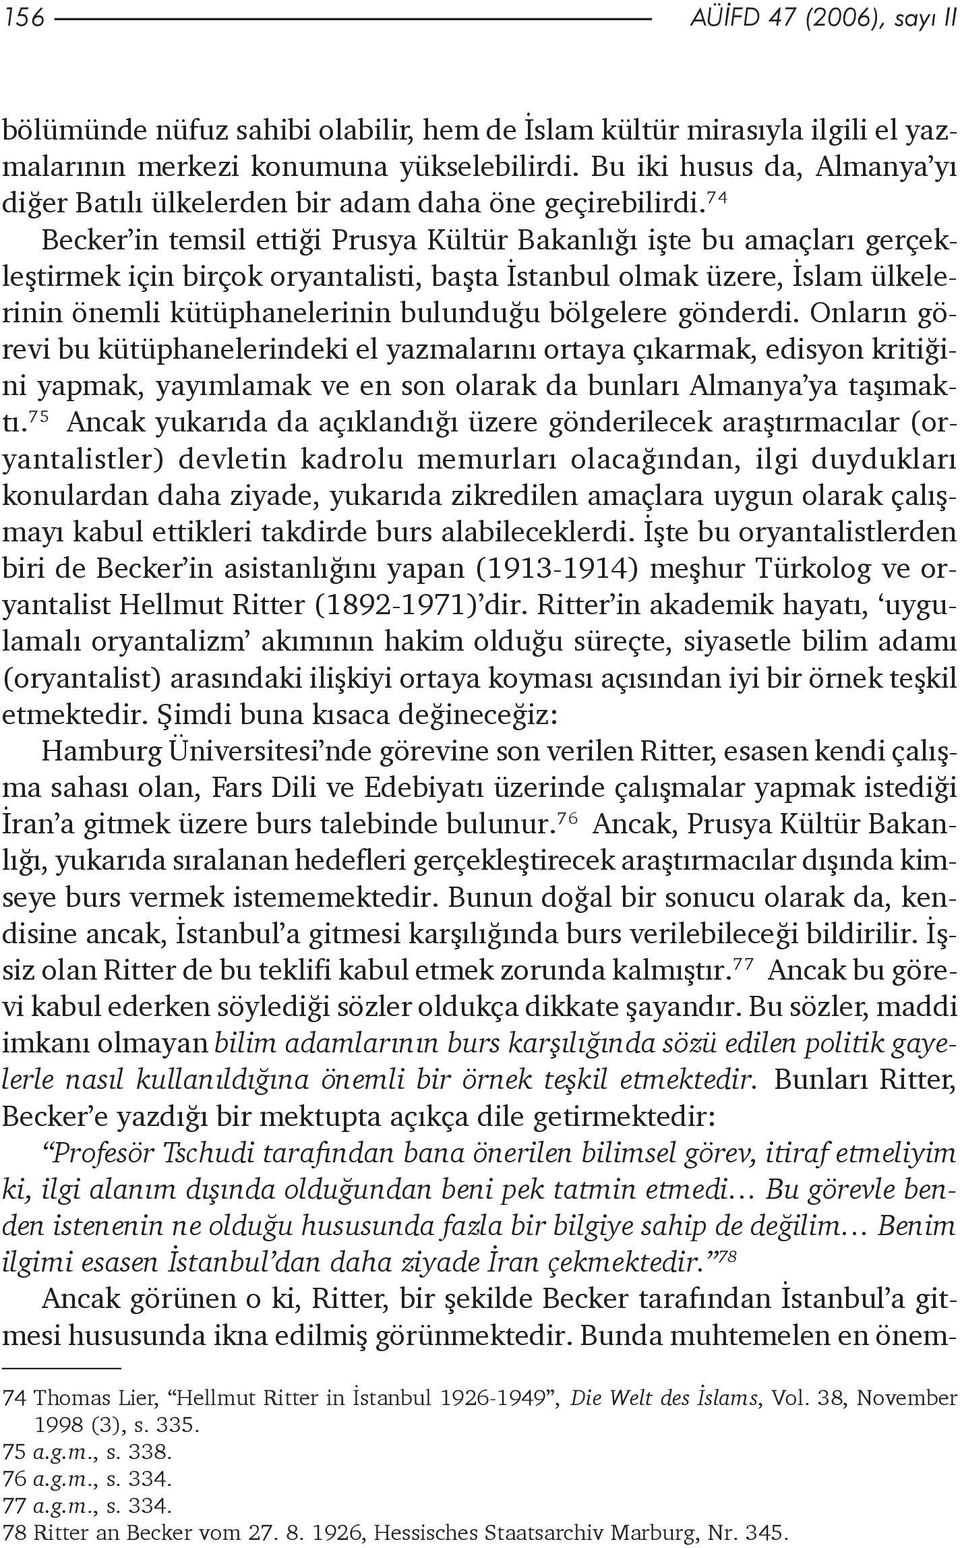 74 Becker in temsil ettiði Prusya Kültür Bakanlýðý iþte bu amaçlarý gerçekleþtirmek için birçok oryantalisti, baþta Ýstanbul olmak üzere, Ýslam ülkelerinin önemli kütüphanelerinin bulunduðu bölgelere